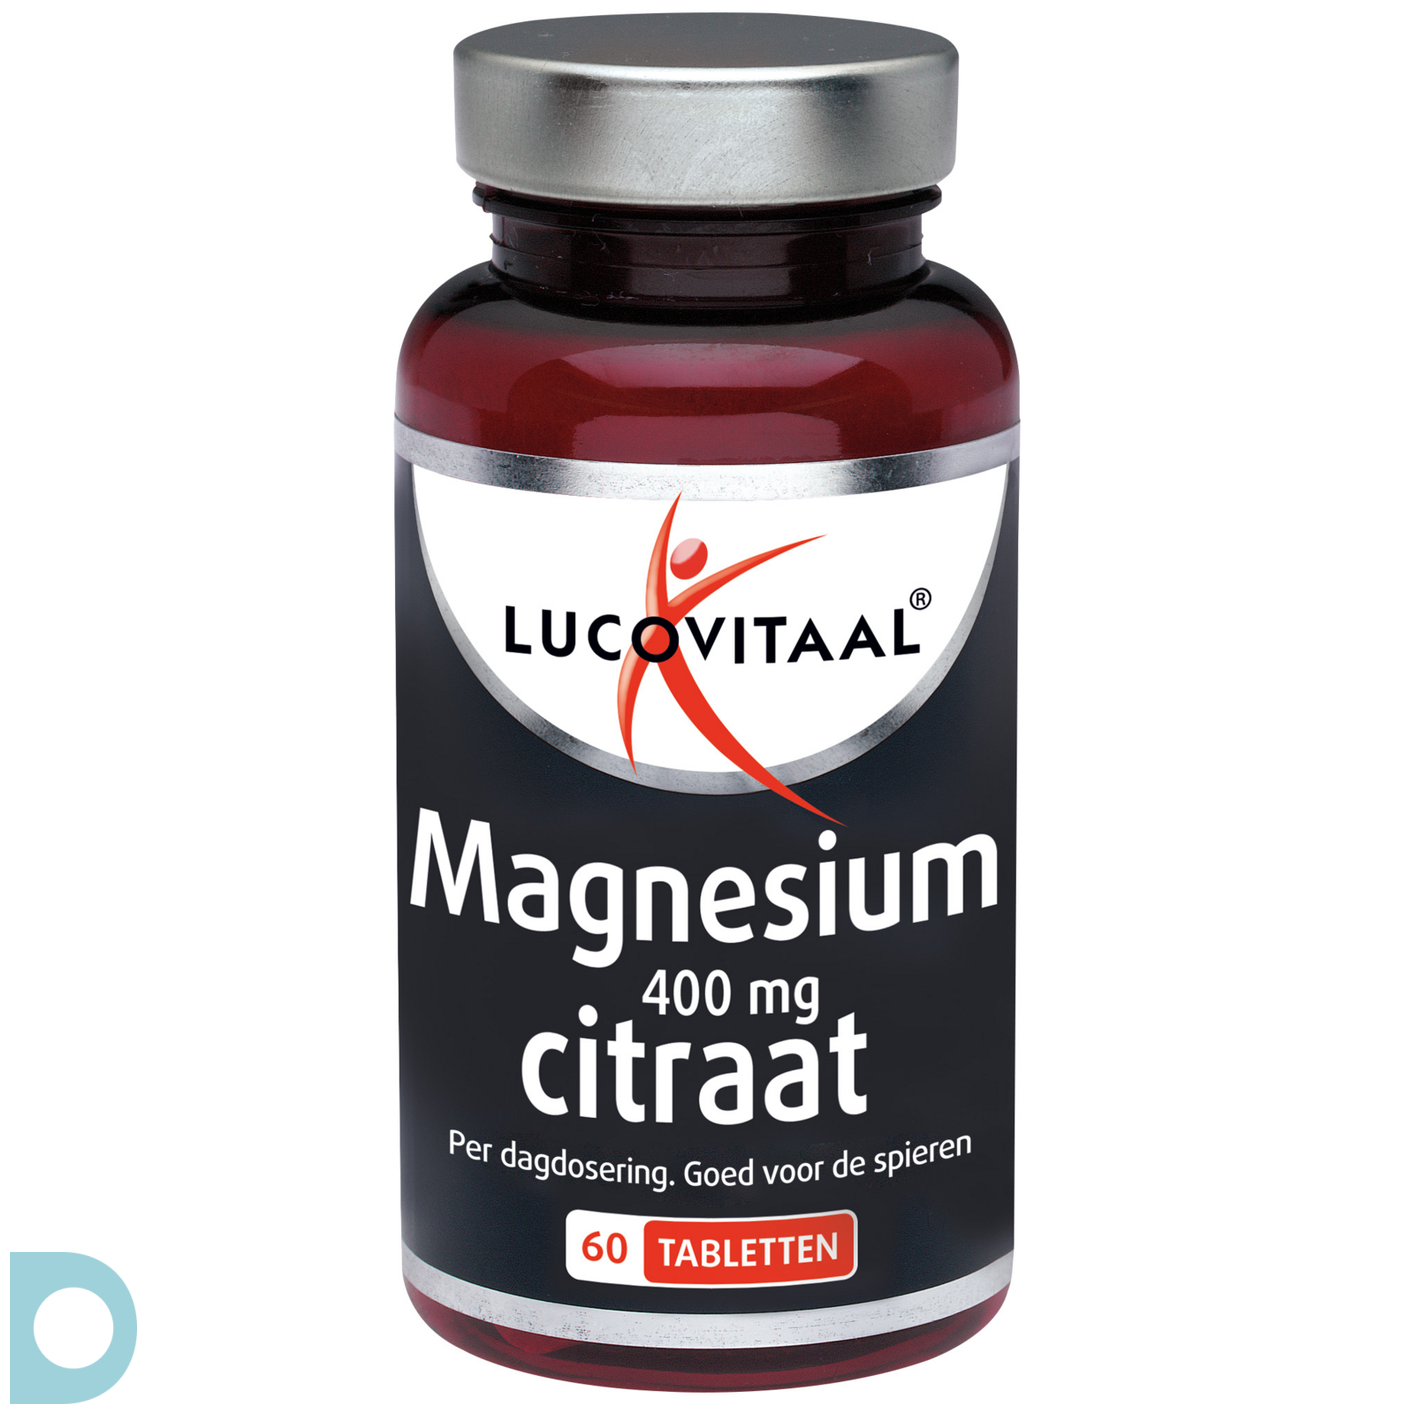 Lucovitaal Magnesium Citraat 400mg De Online